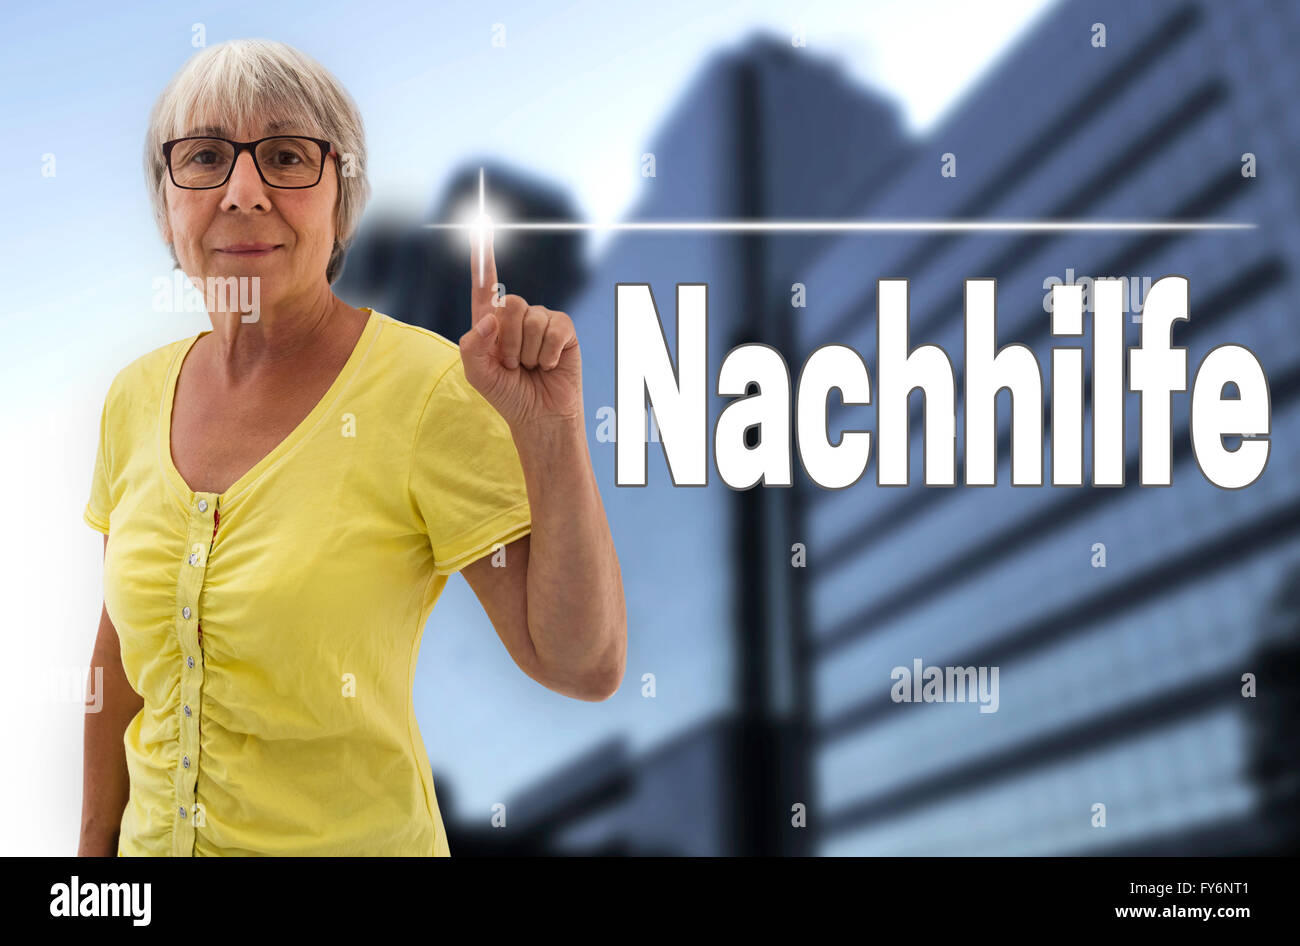 Nachhilfe (im deutschen Nachhilfe) Touchscreen zeigt Senior. Stockfoto